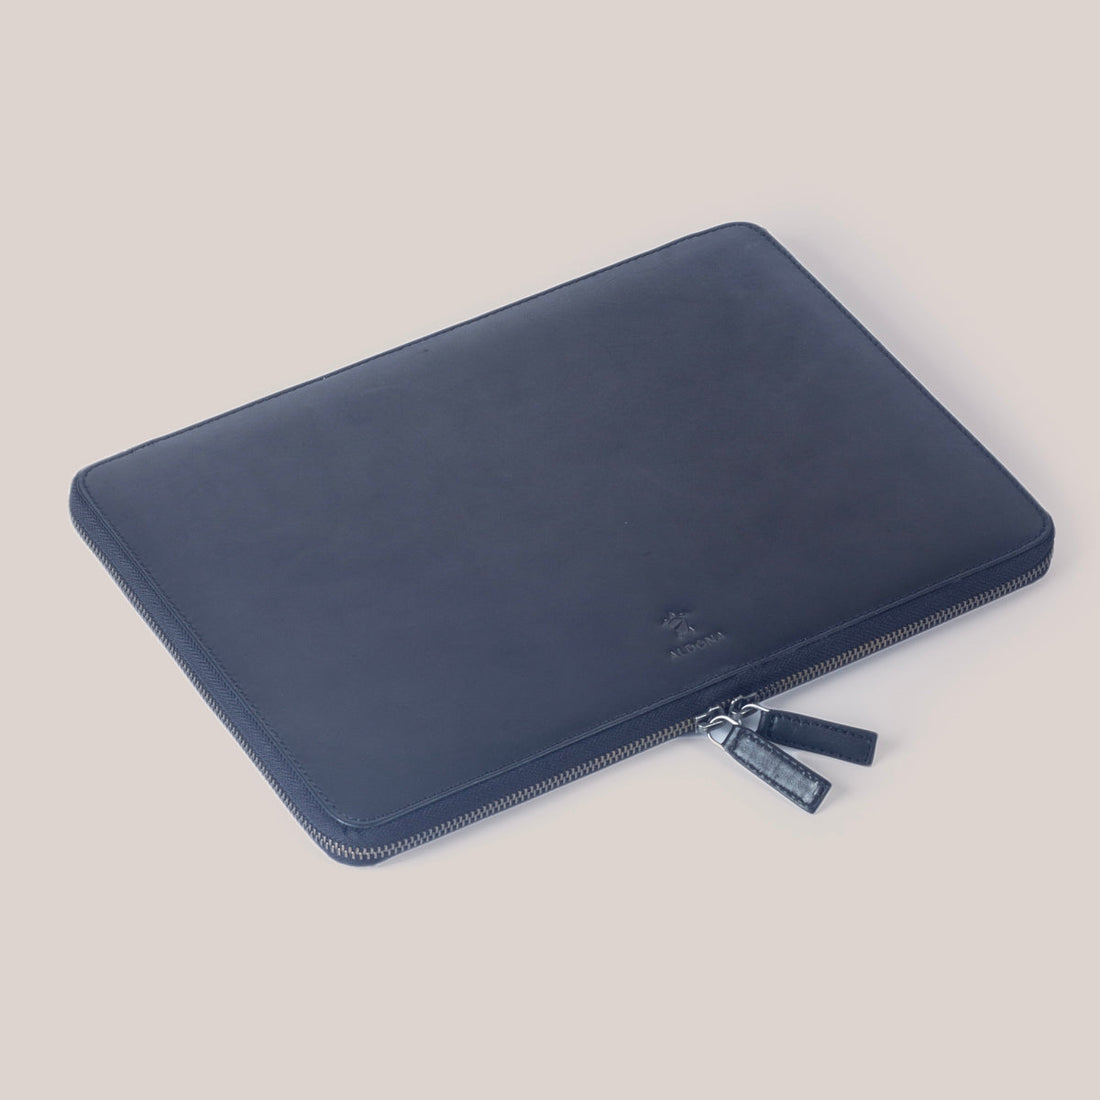 MacBook Air 13 Zippered Laptop Case - Cognac